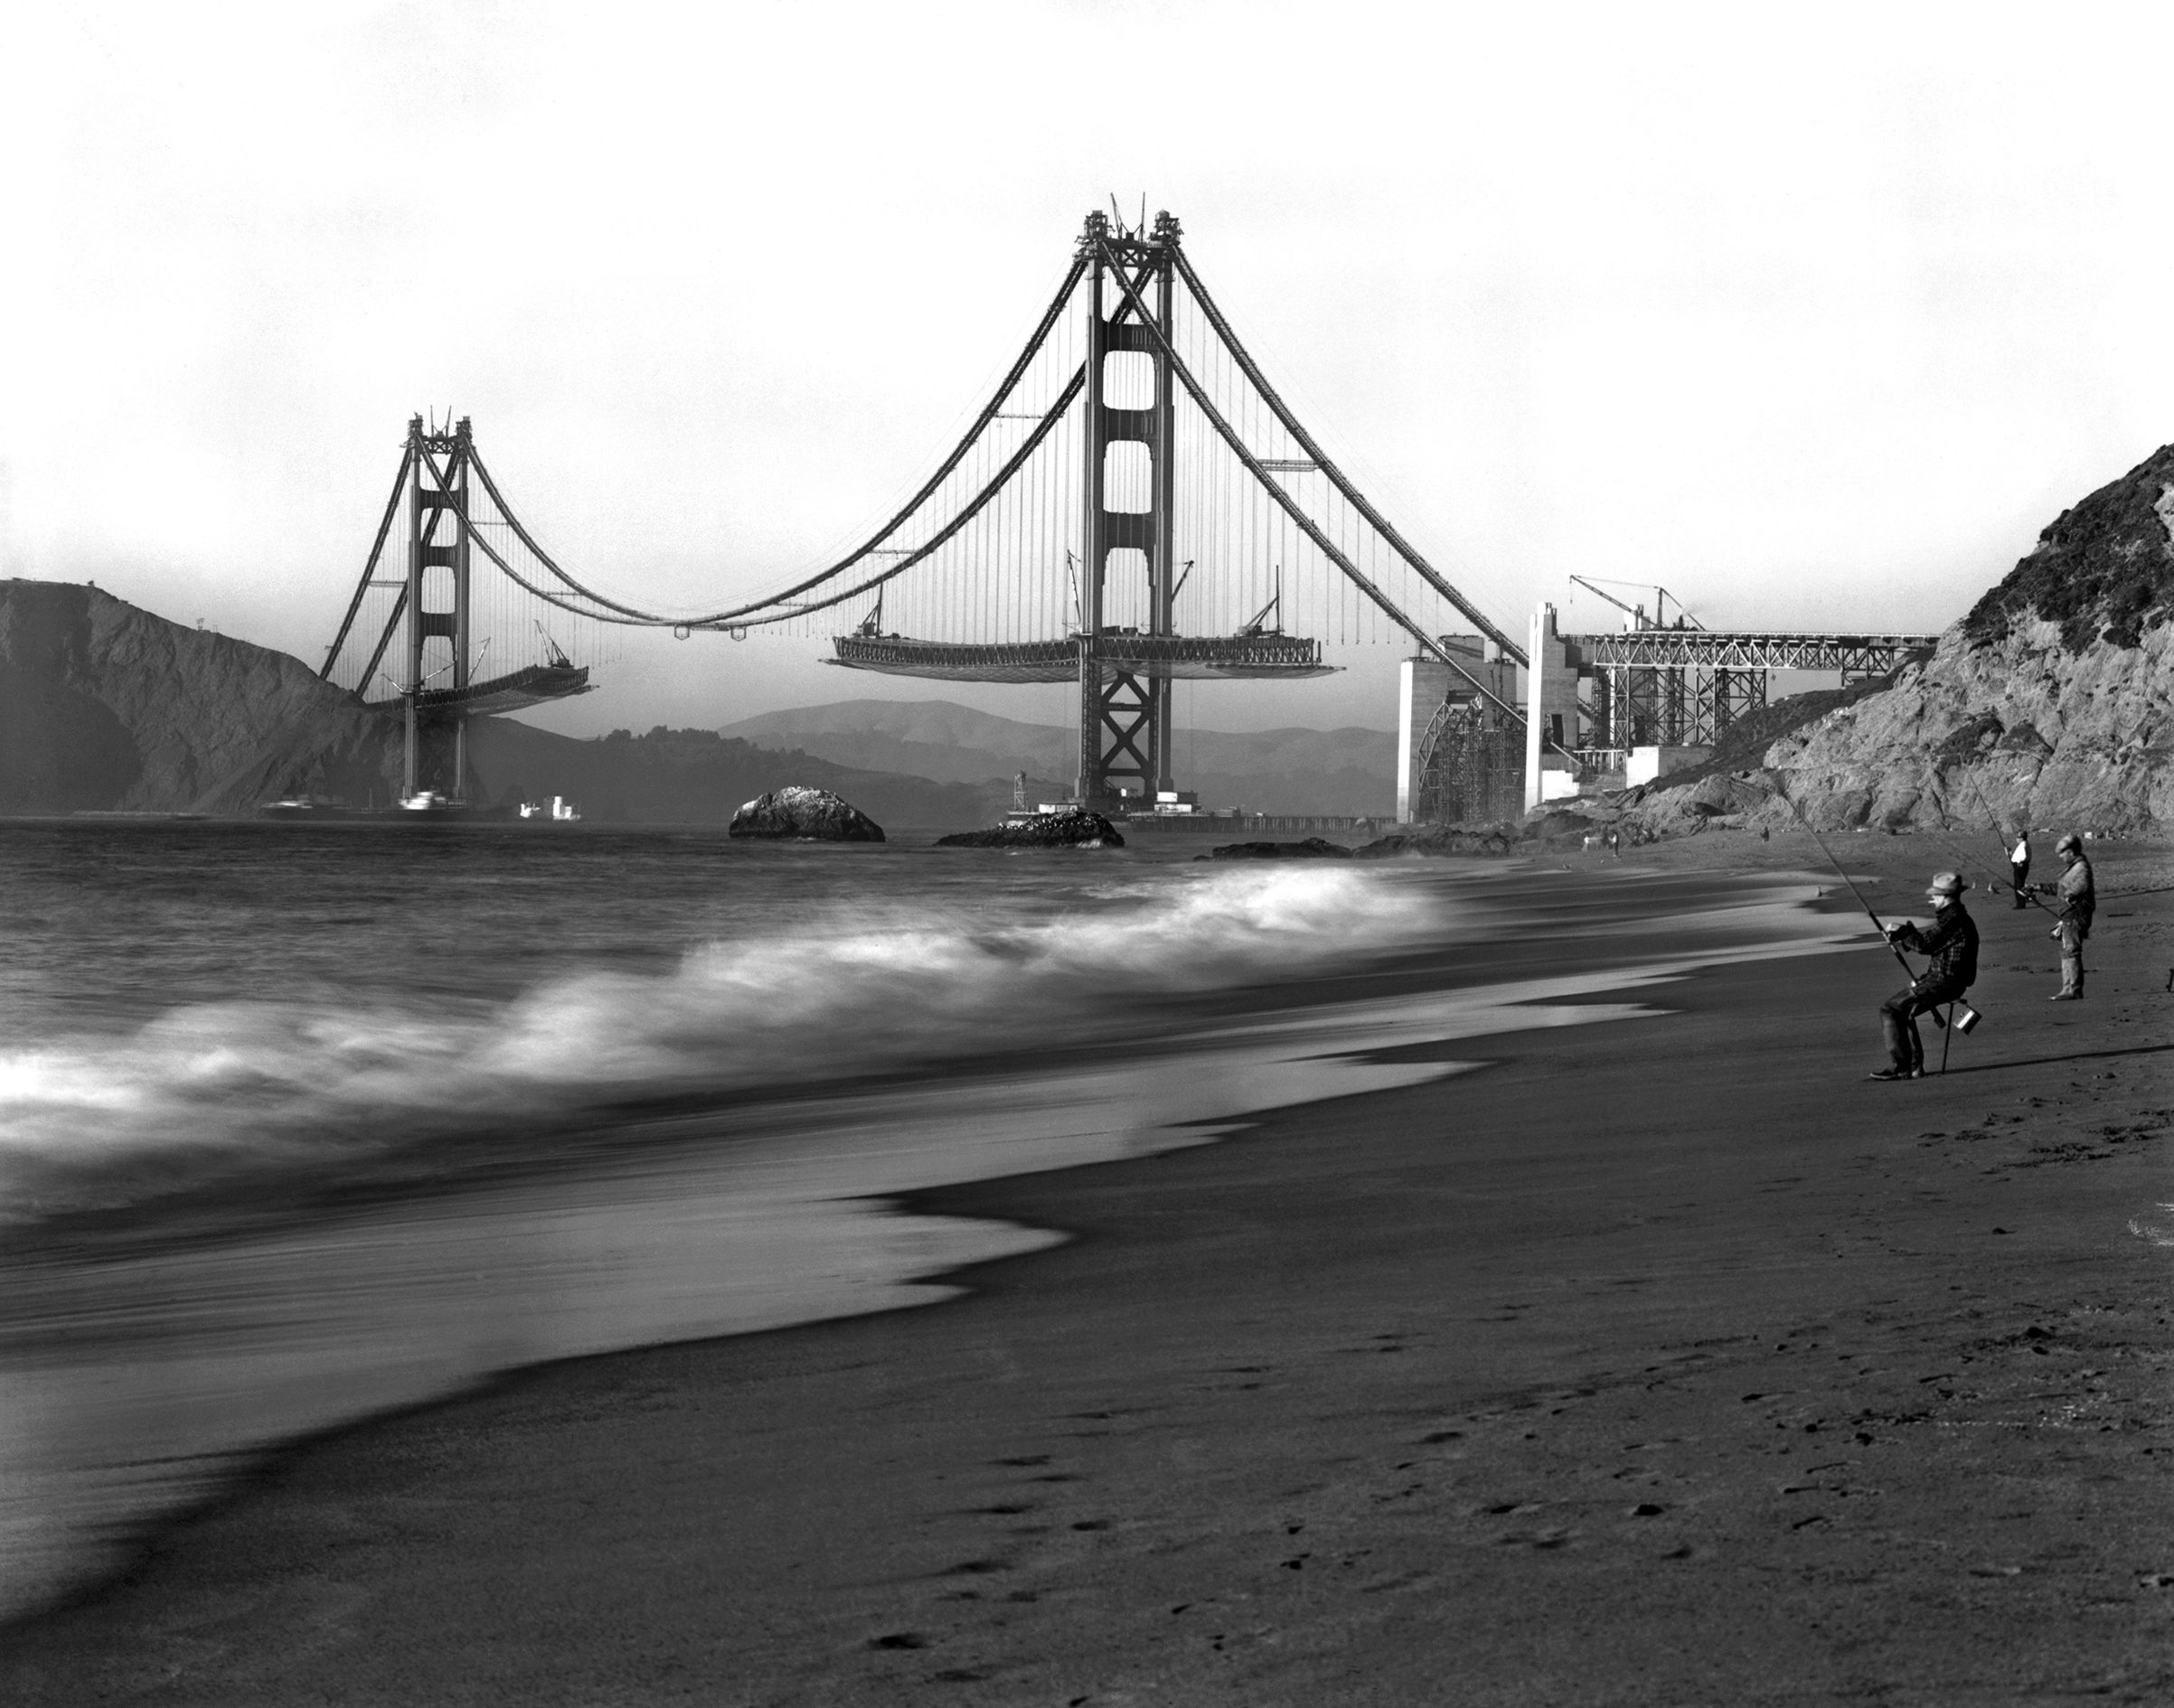 Baker Beach Golden Gate Bridge Wallpapers